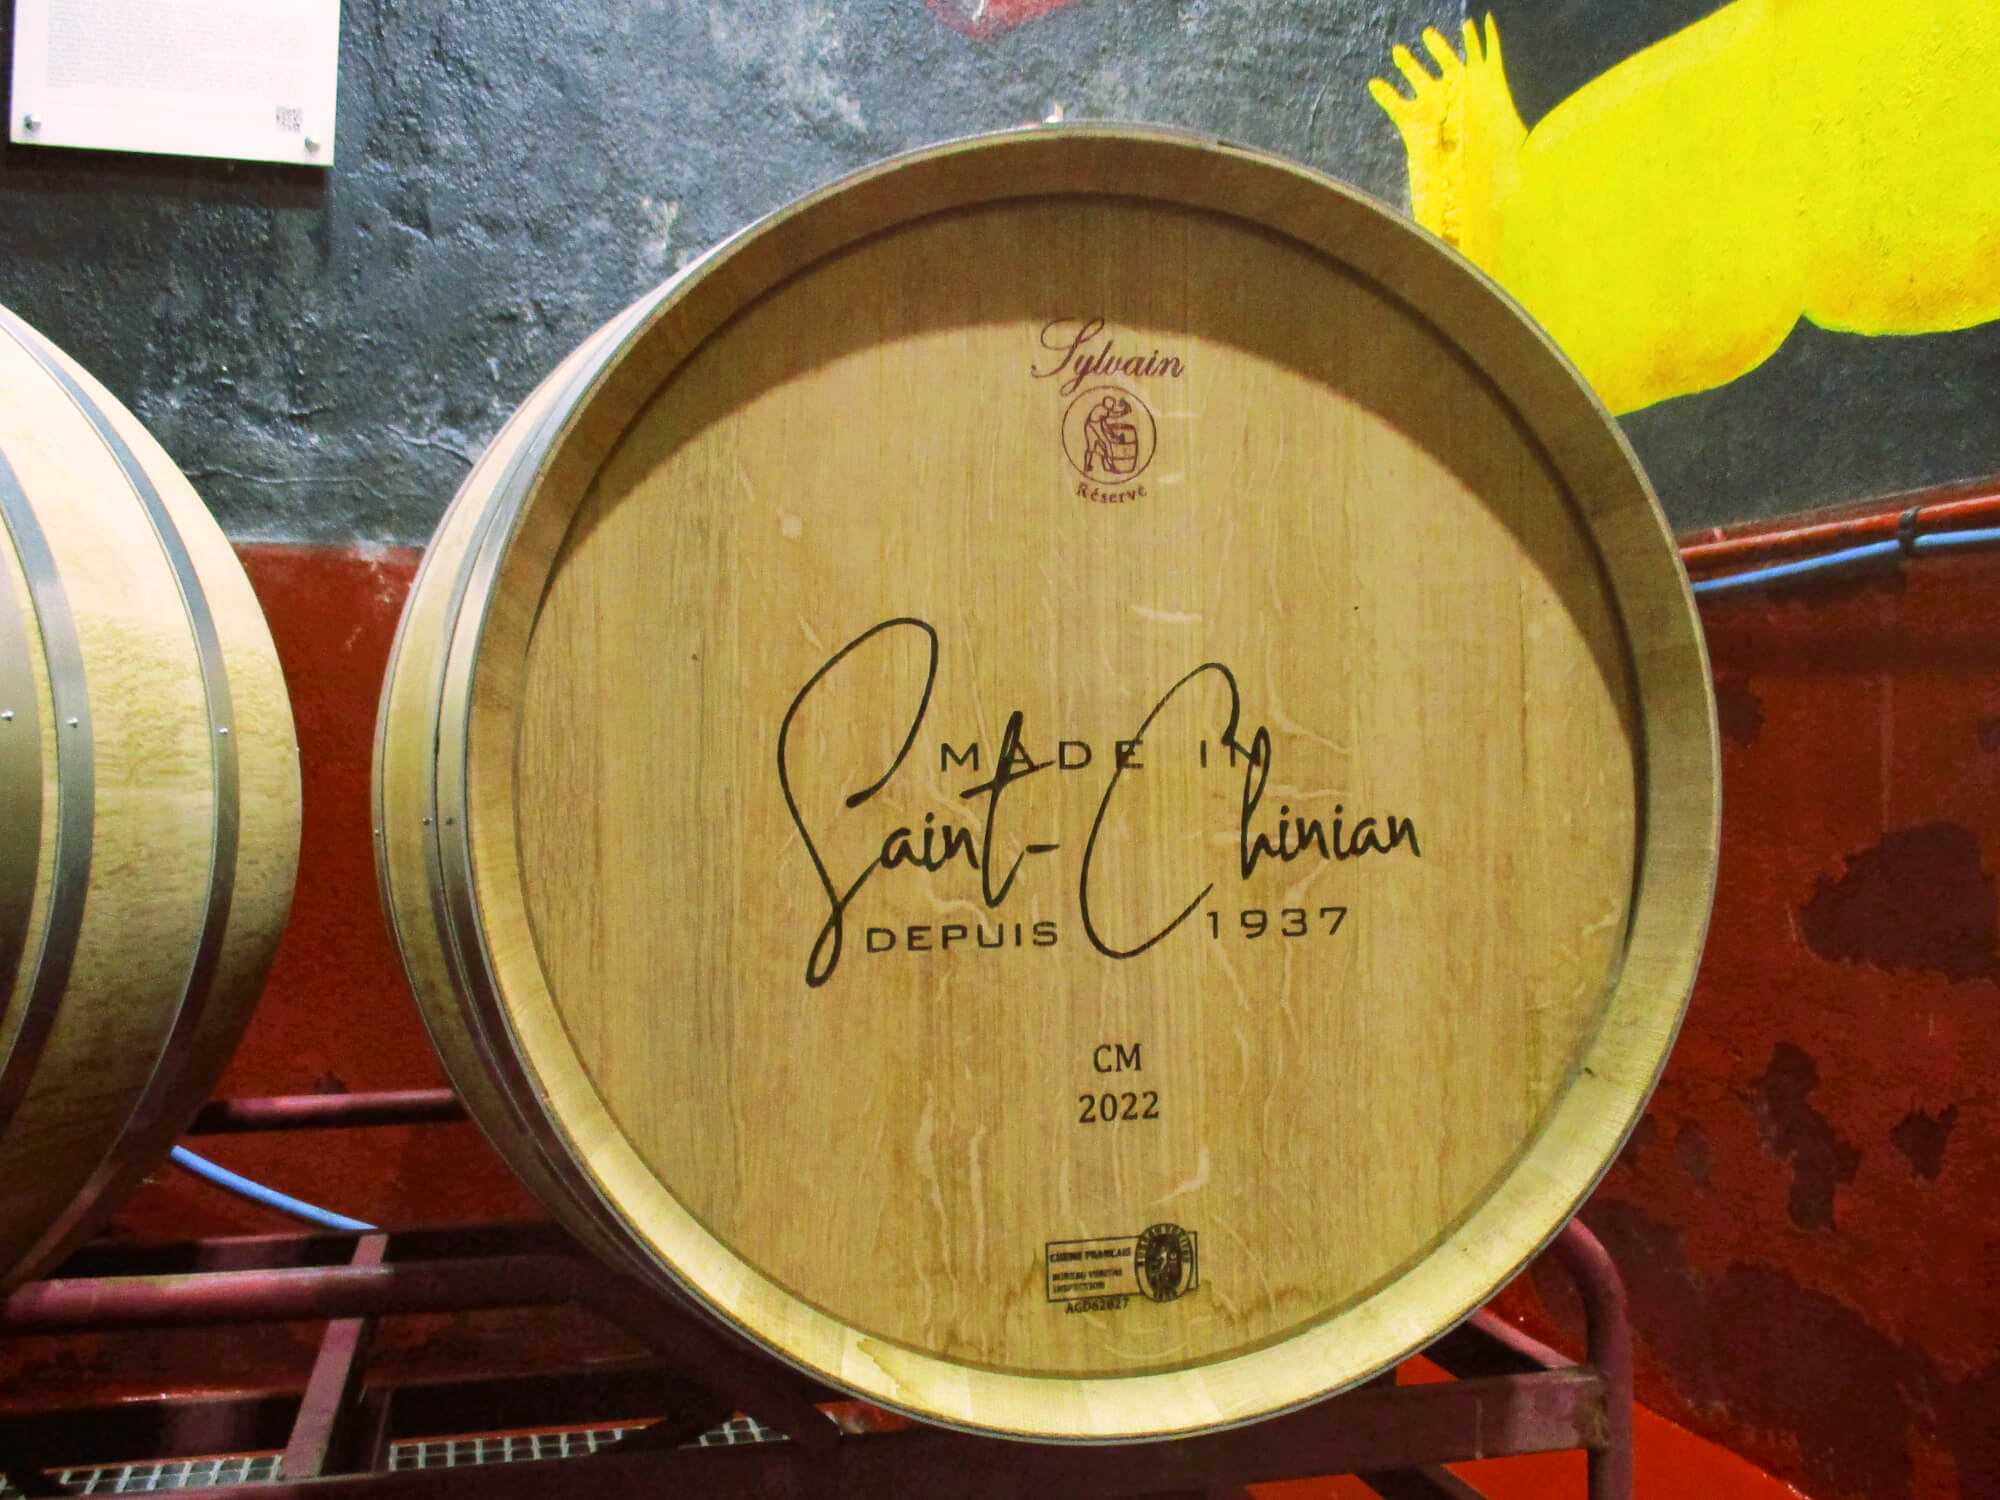 Cuba de vino Made in Saint-Chinian